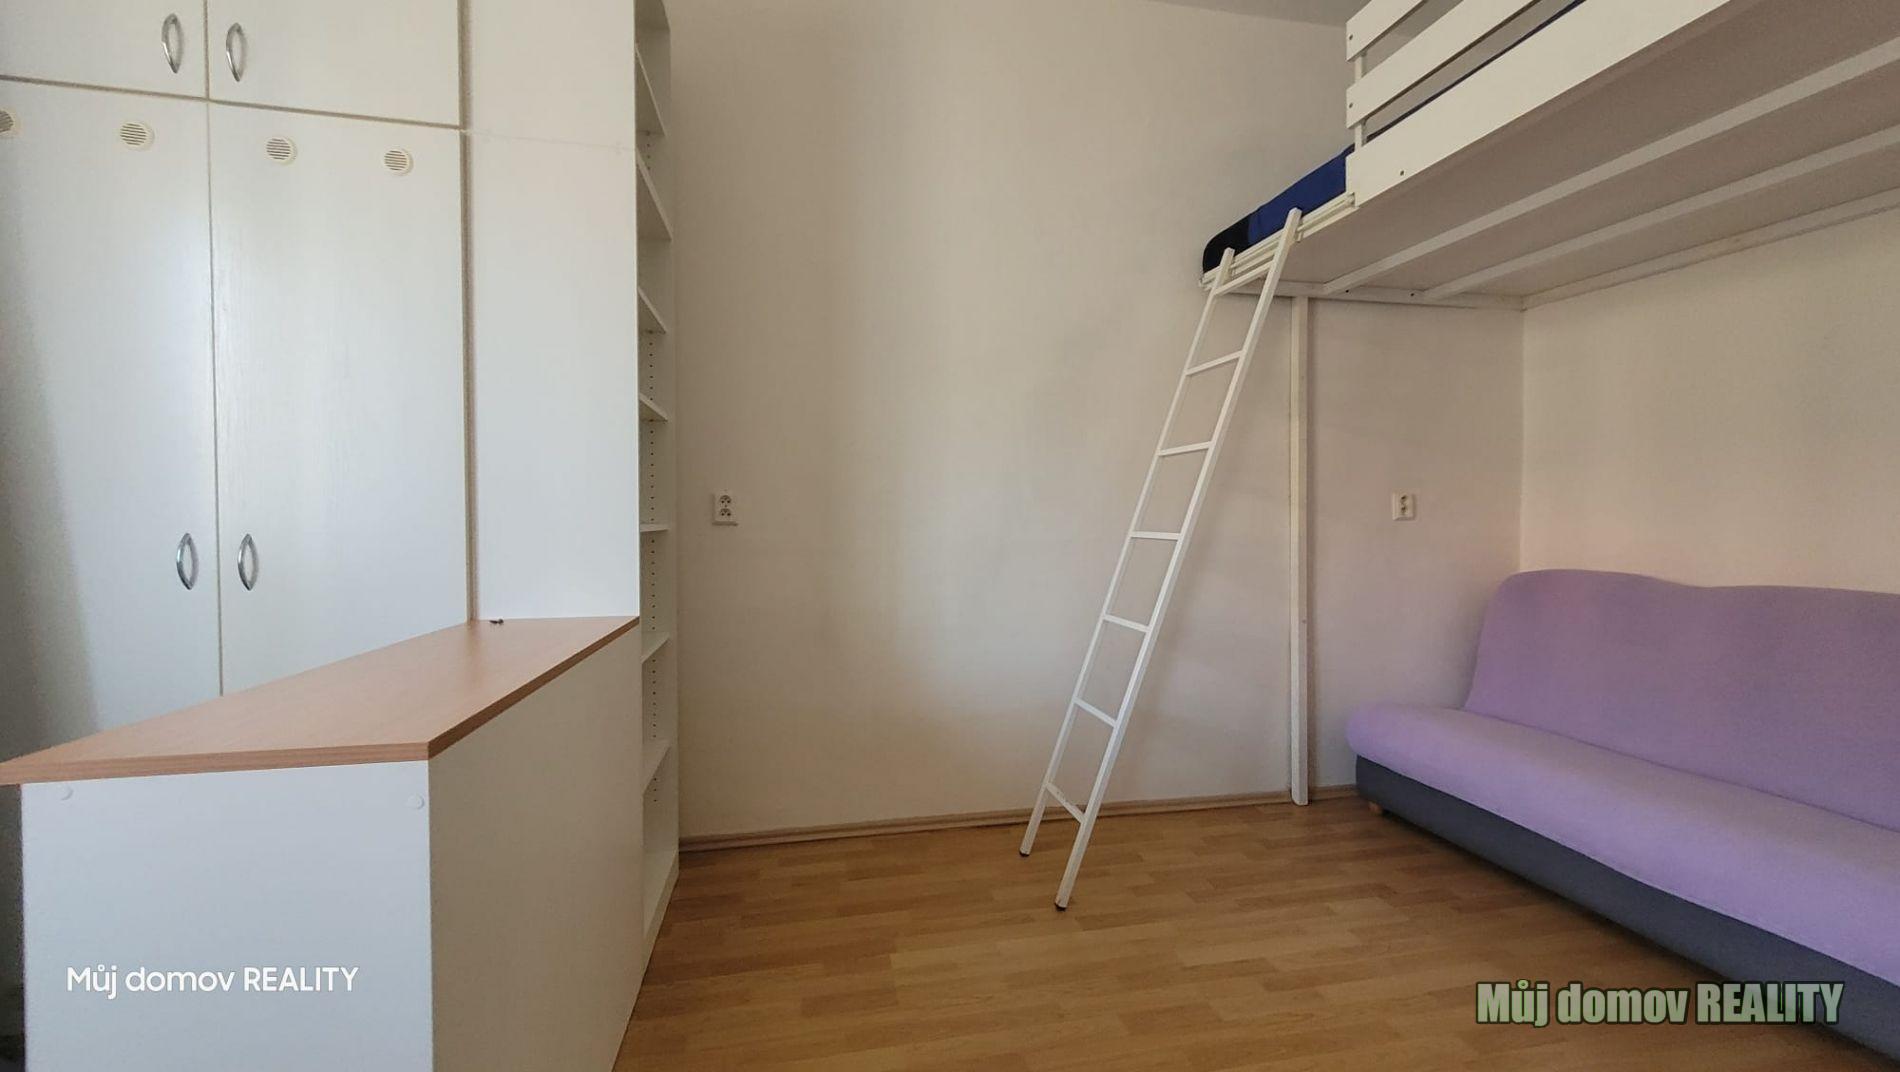 Pronajmu byt o rozloze 30 m2 za 16 000,- Kč, 17 500,- Kč pro dvě osoby, Bělohorská 193/149.